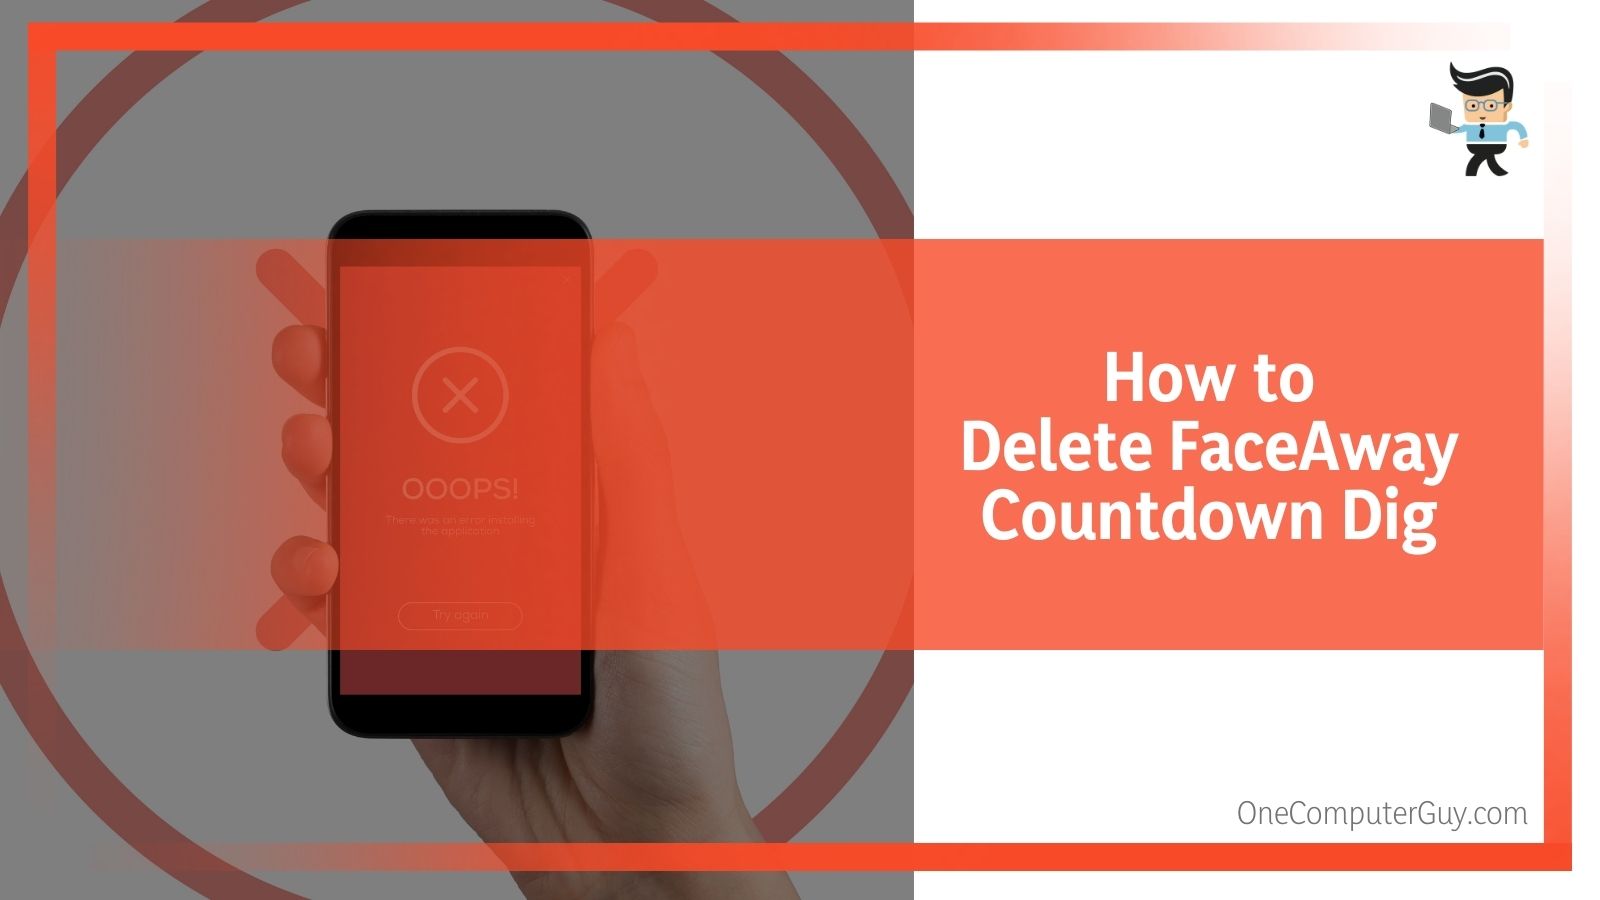 Deleting FaceAway Countdown Dig